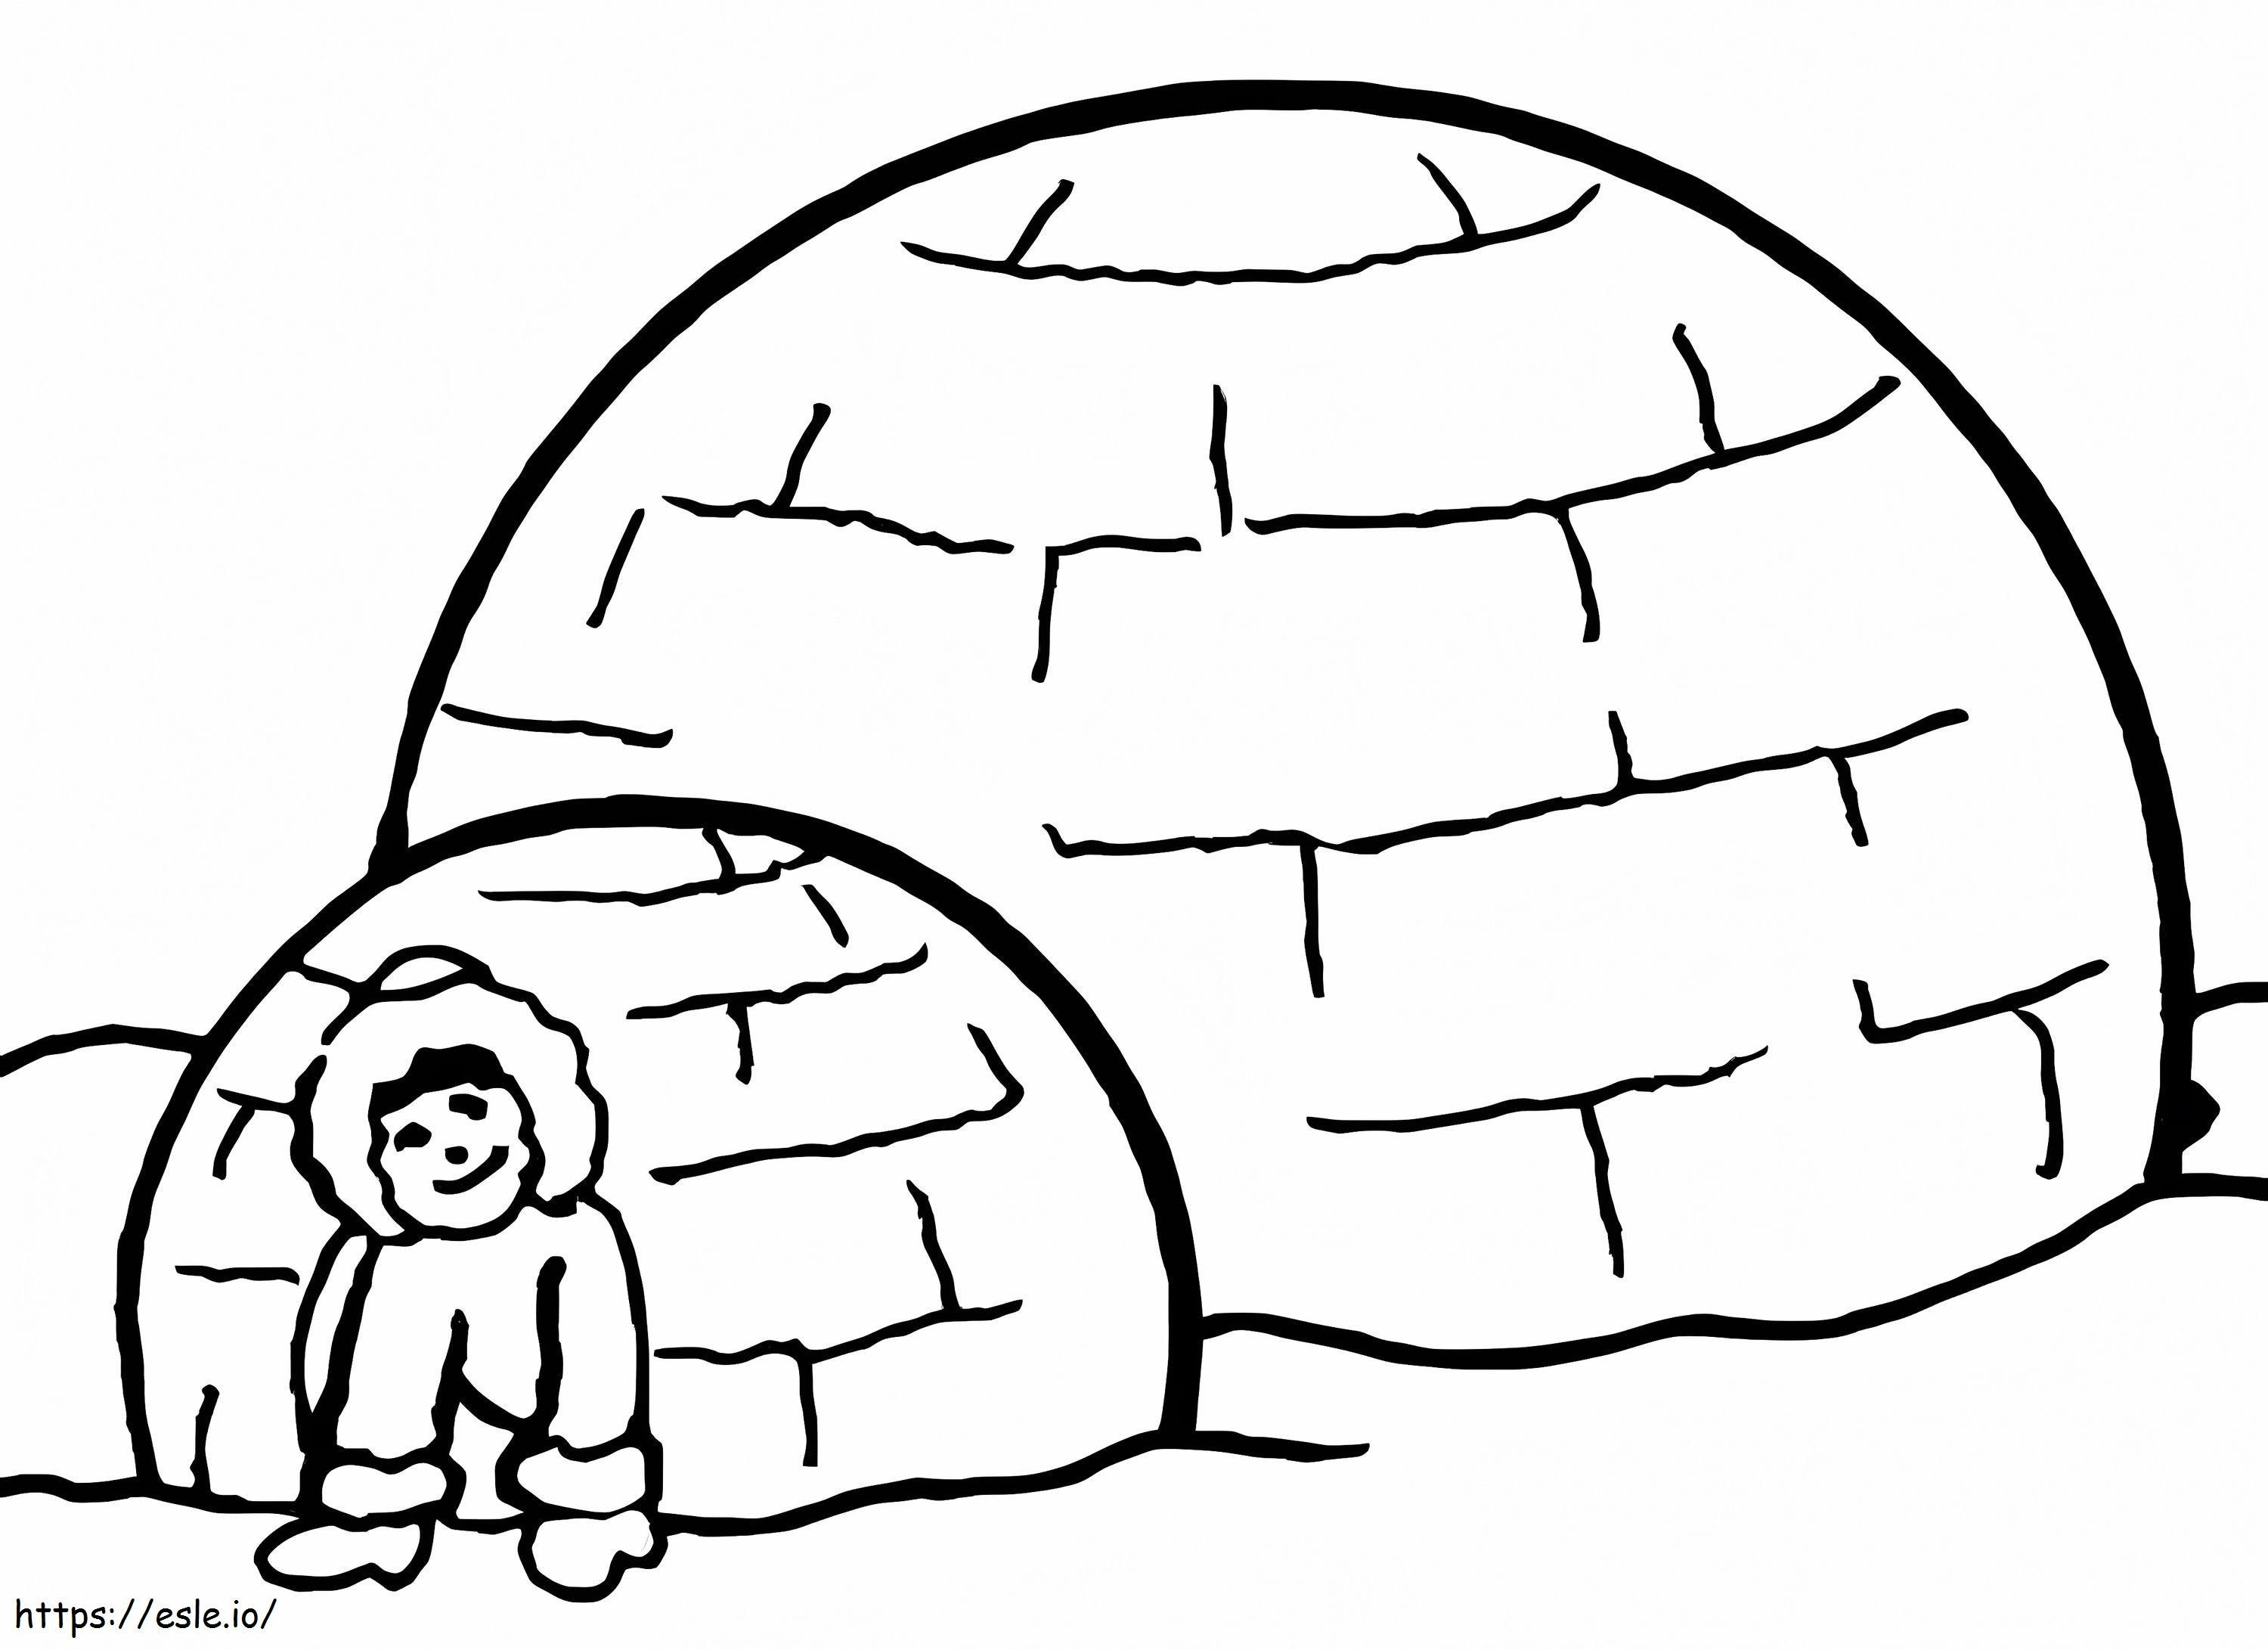 Desenând un om cu două igluuri de colorat